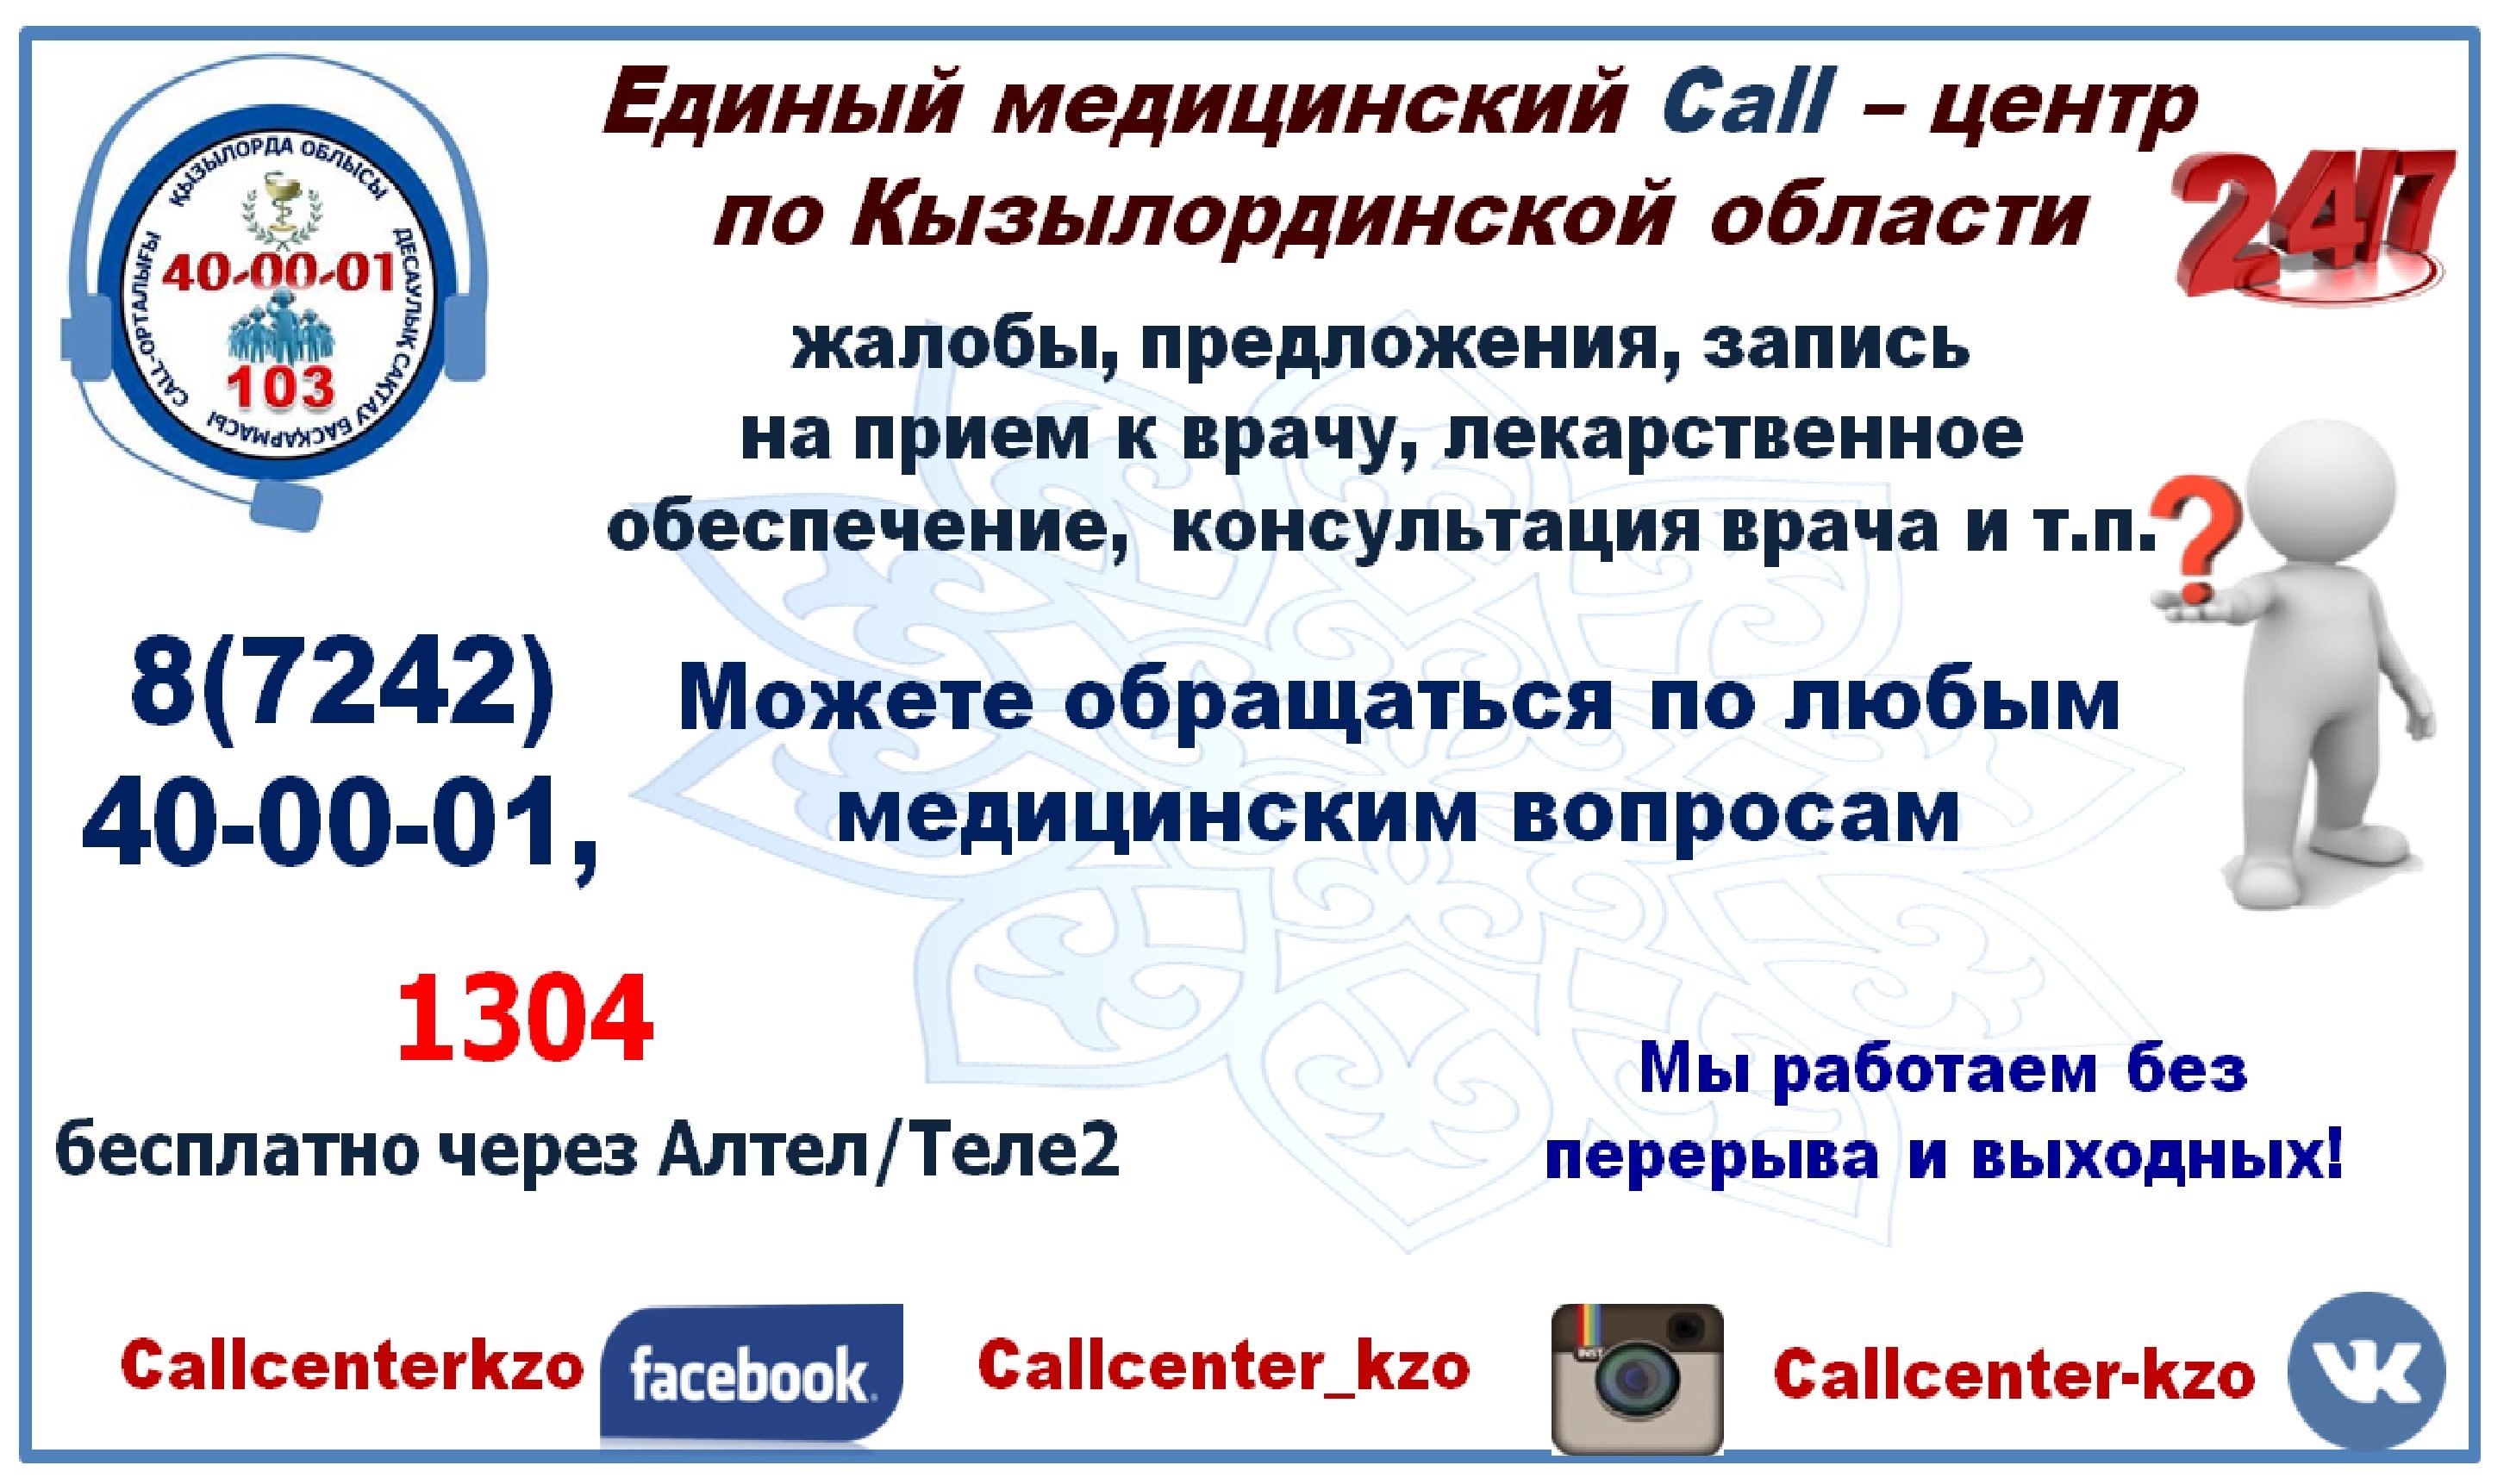 Единый медицинский Call-центр по Кызылординской области